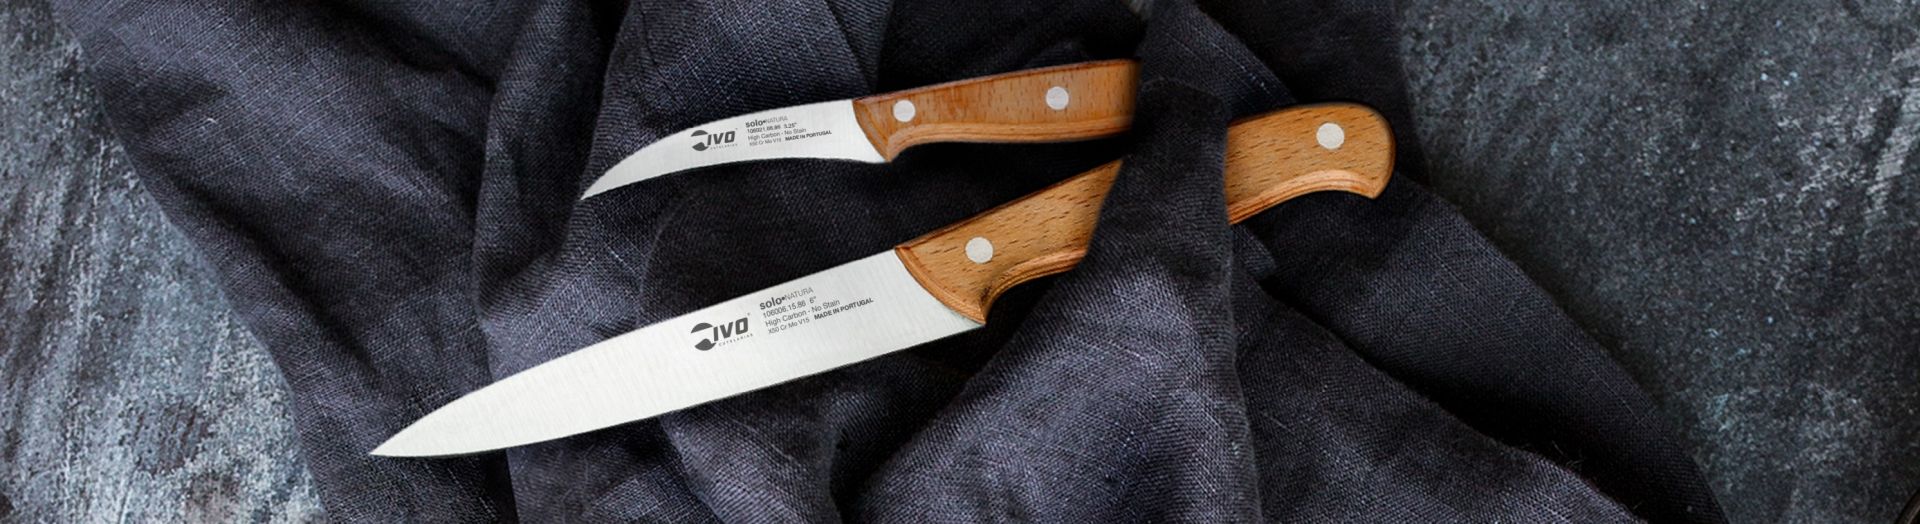 Ivo Cutlery Solo 4 Piece Steak Knife Set